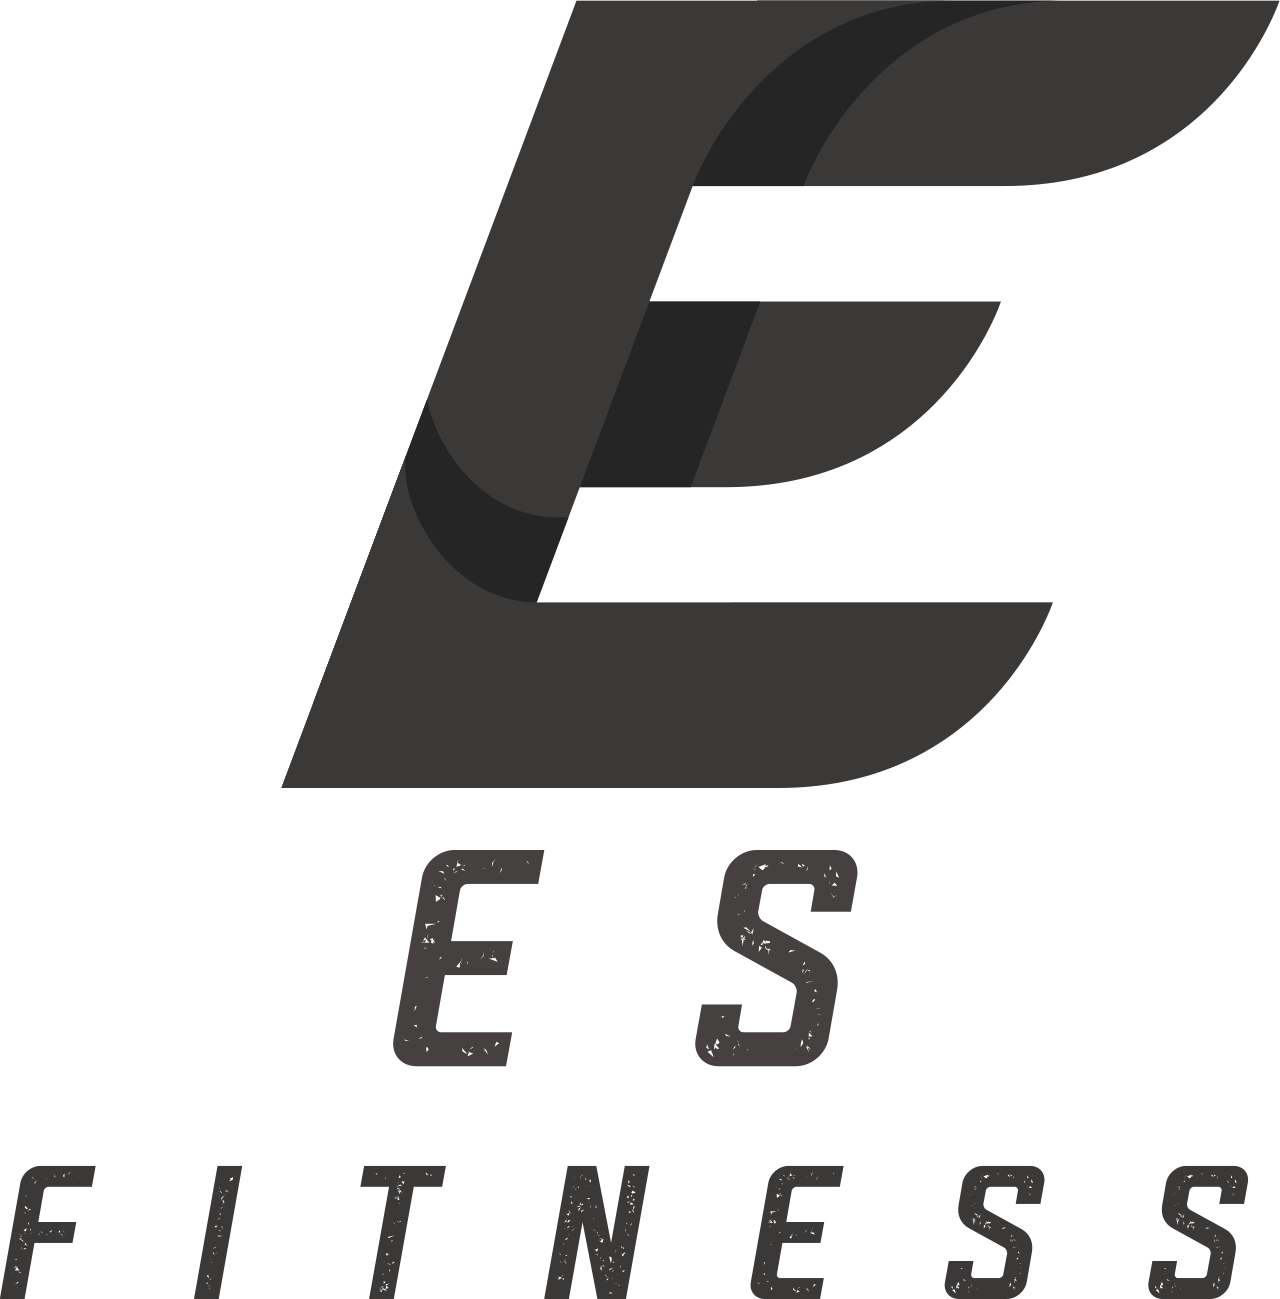 E S's logo